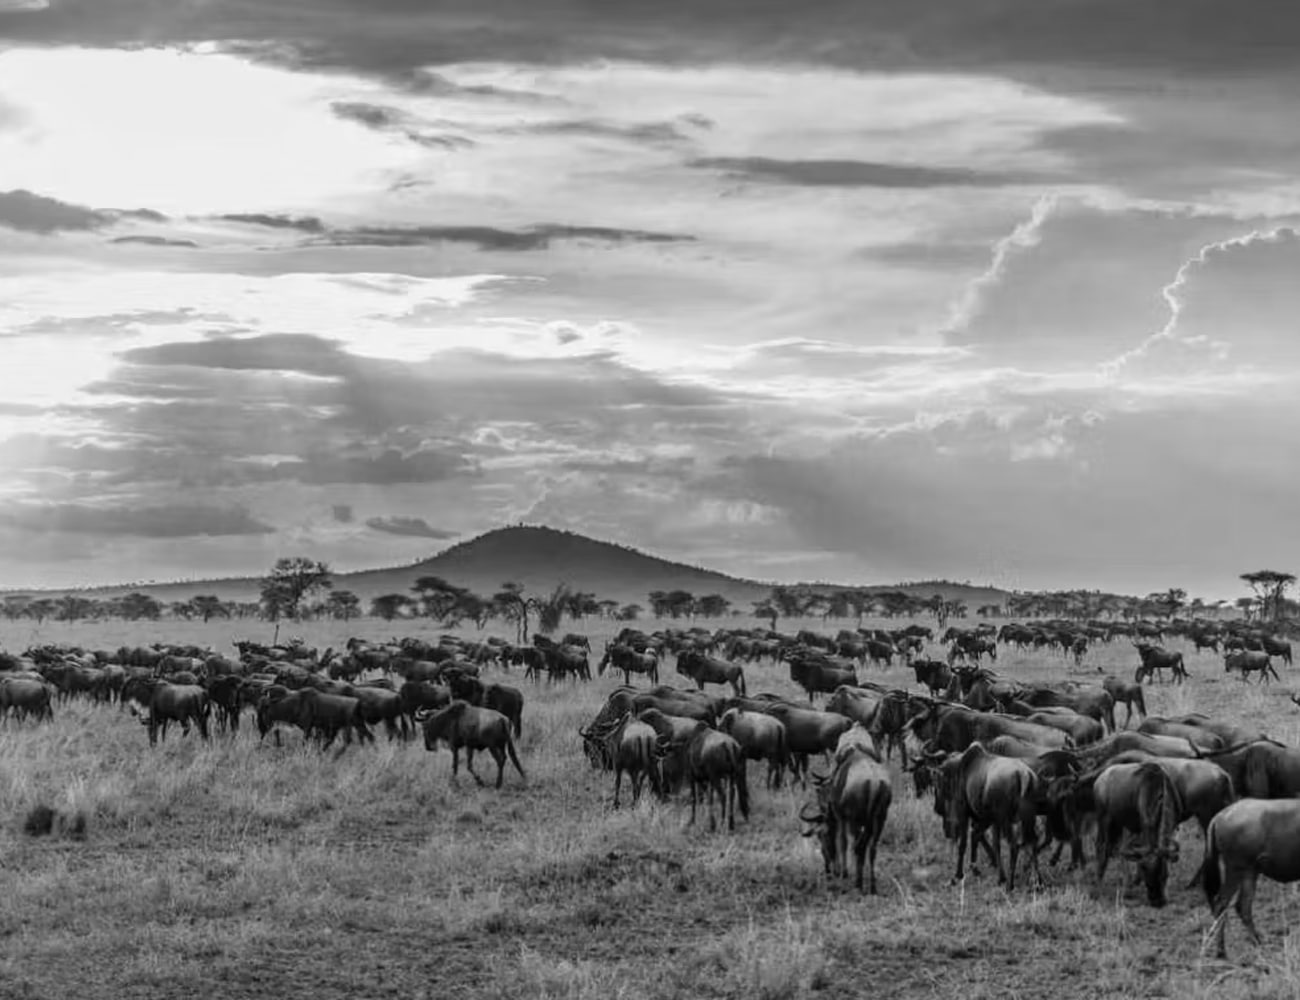 Wildlife in The Serengeti